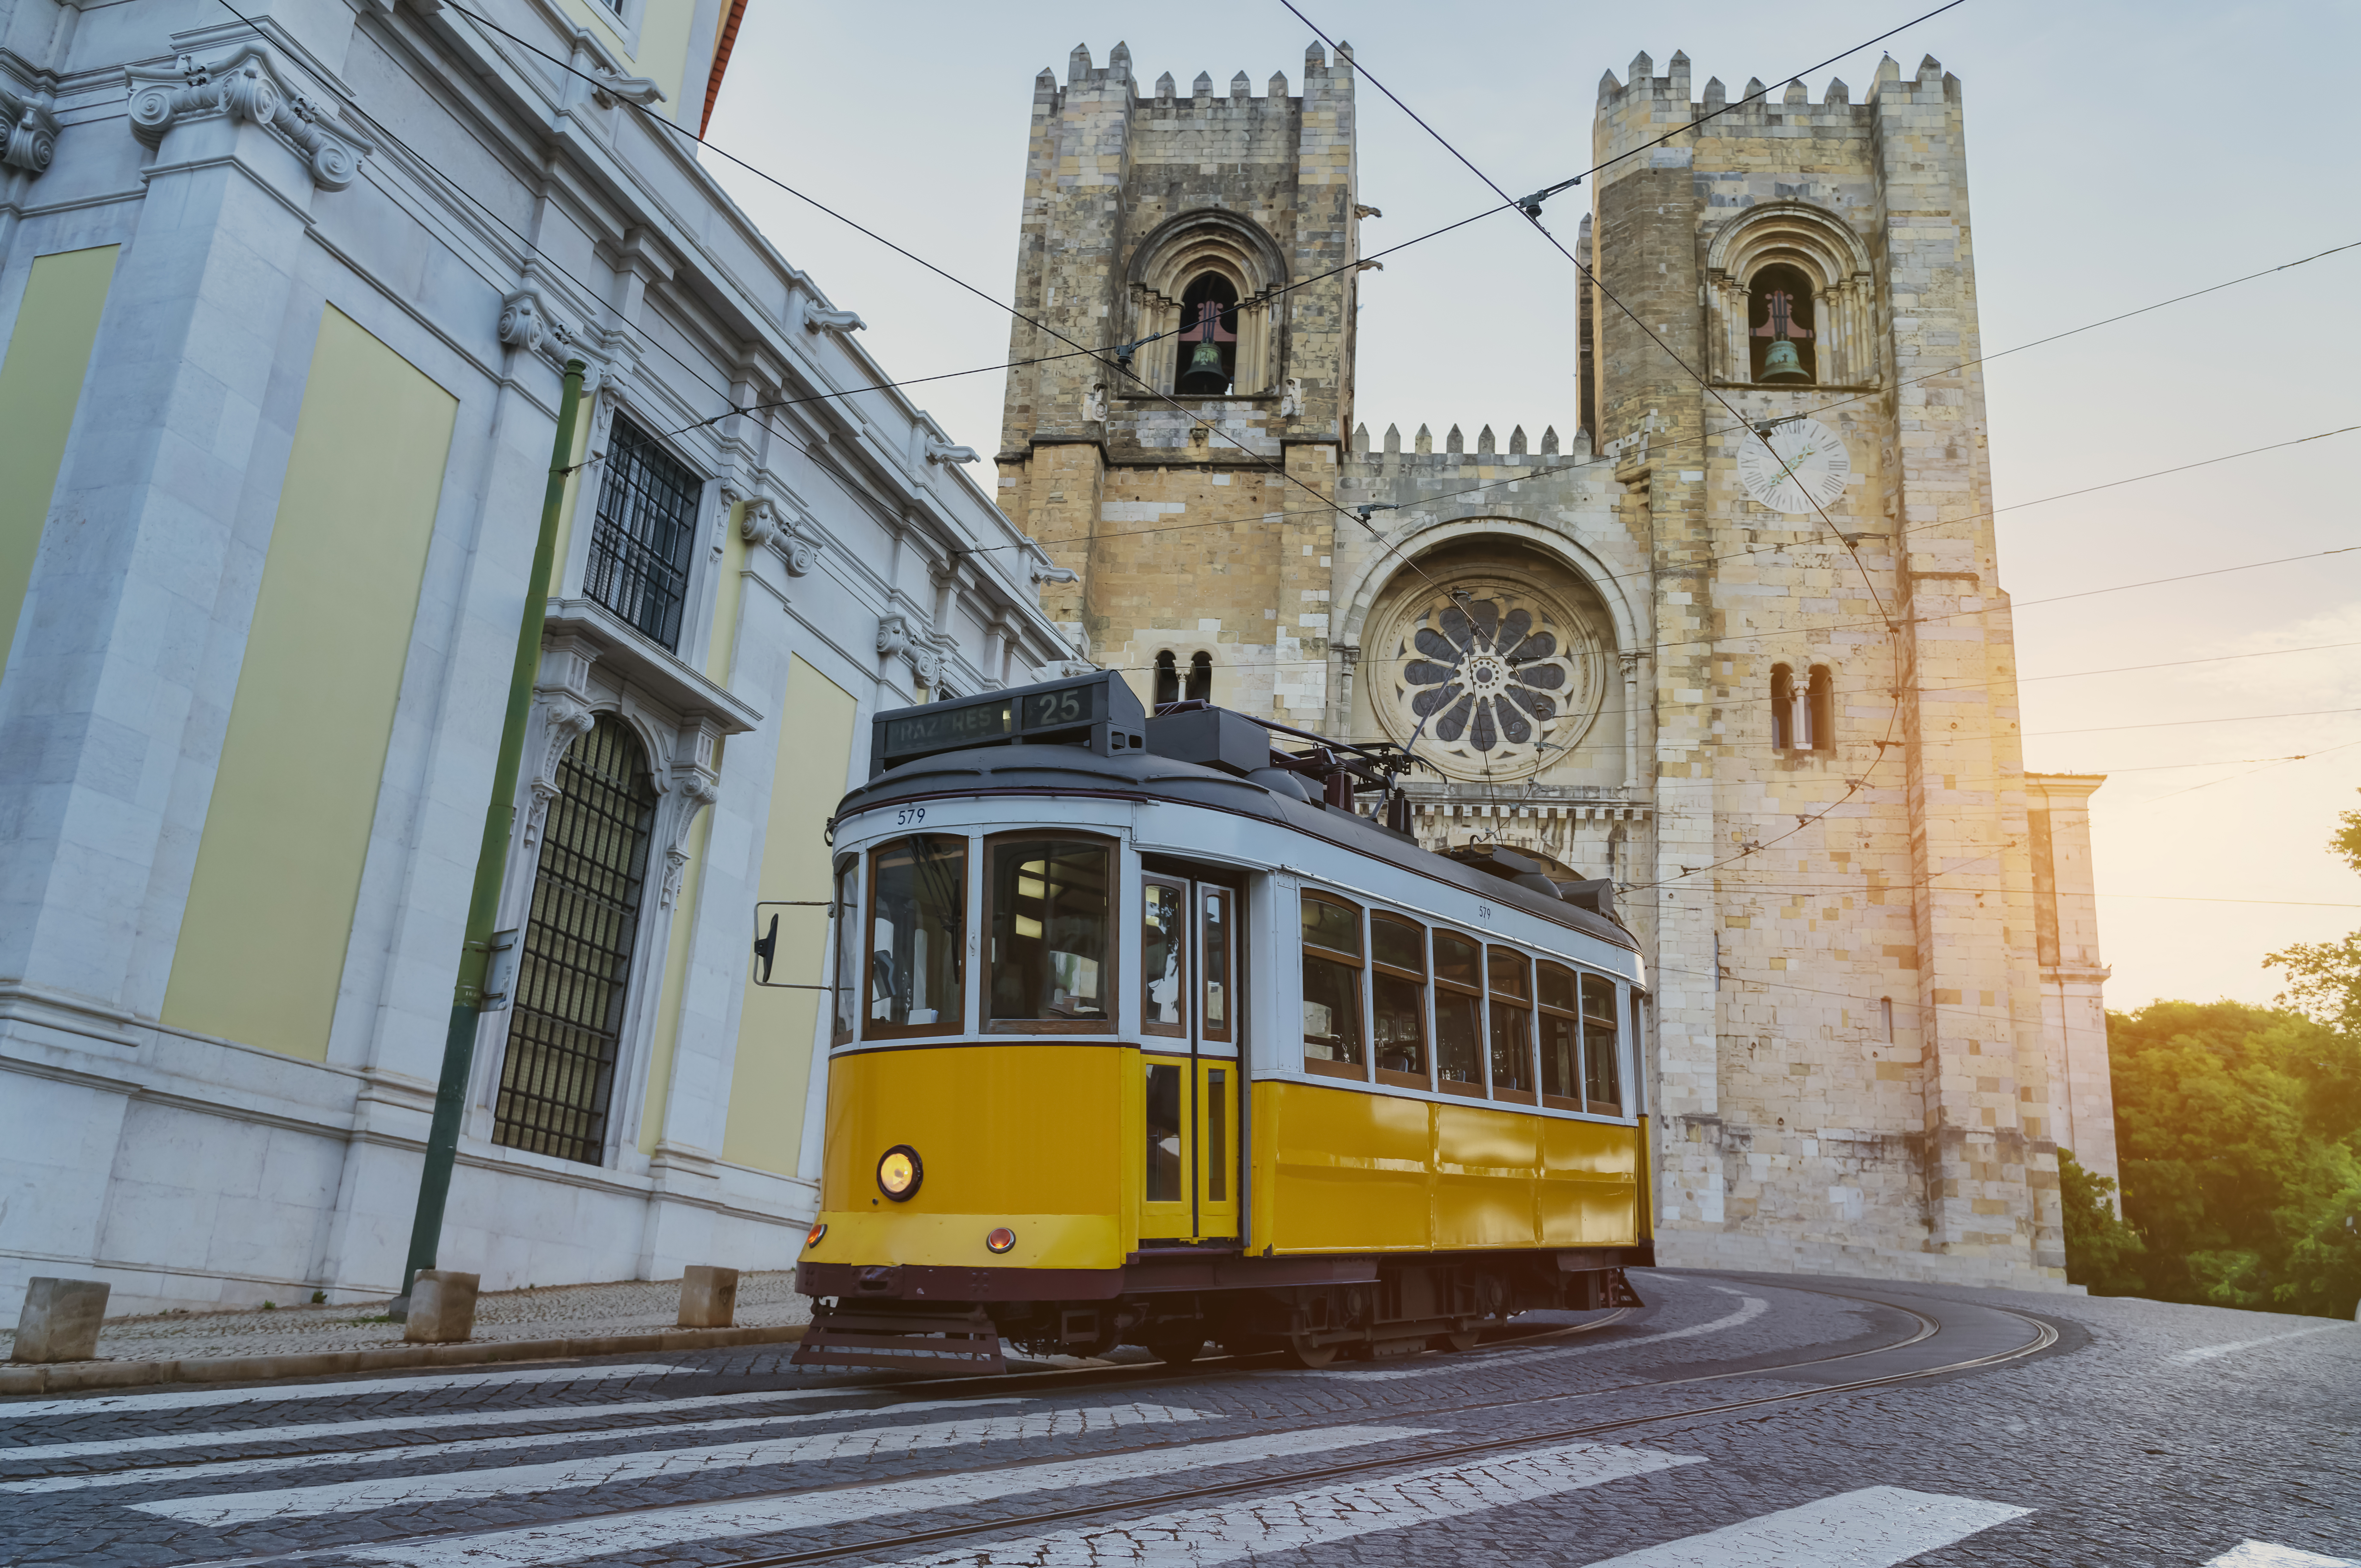 Tranvía en Lisboa - Camino de Santiago portugués